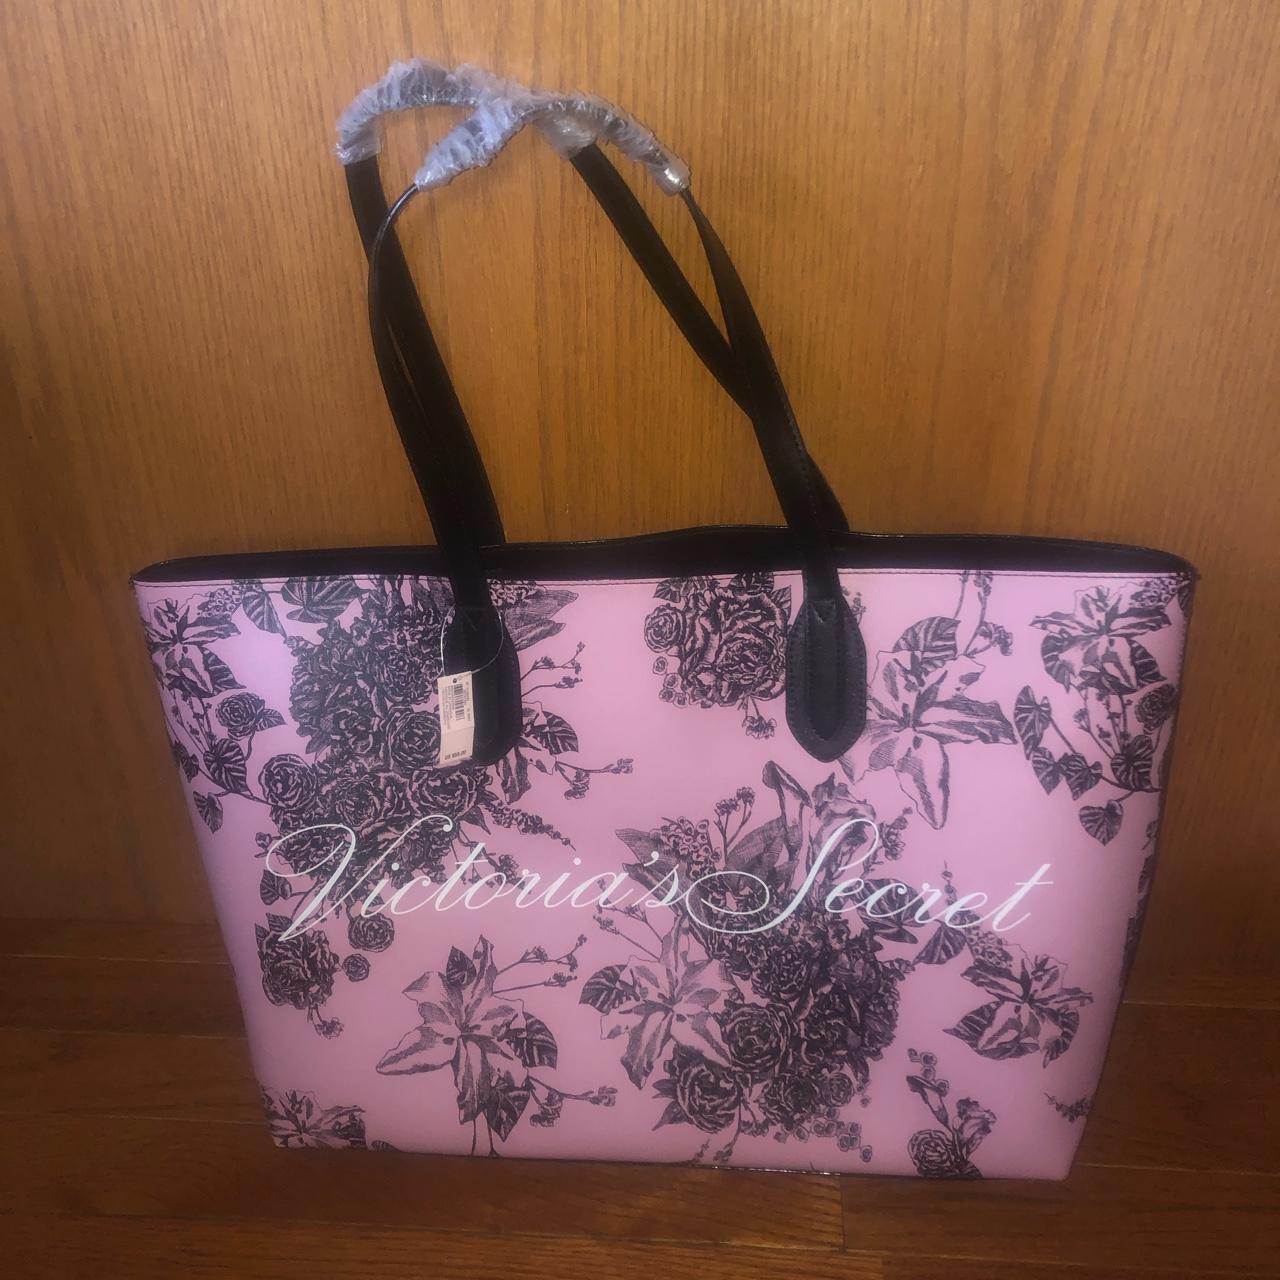 2019 Victoria’s Secret Pink Floral Tote Bag Brand